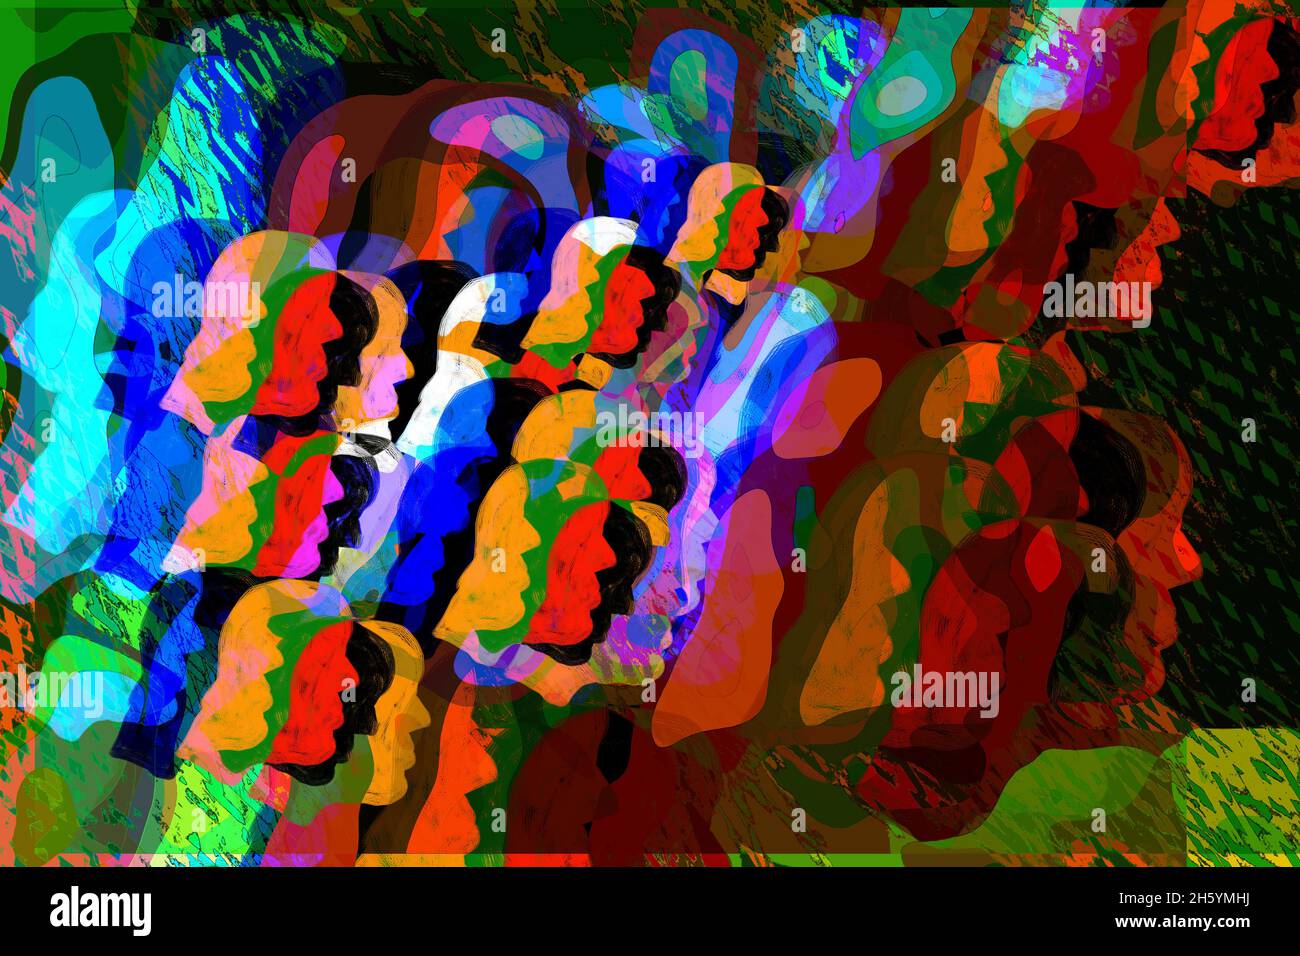 Concepto de multitud de arte abstracto. Muchas caras coloreadas en una muchedumbre. Foto de stock